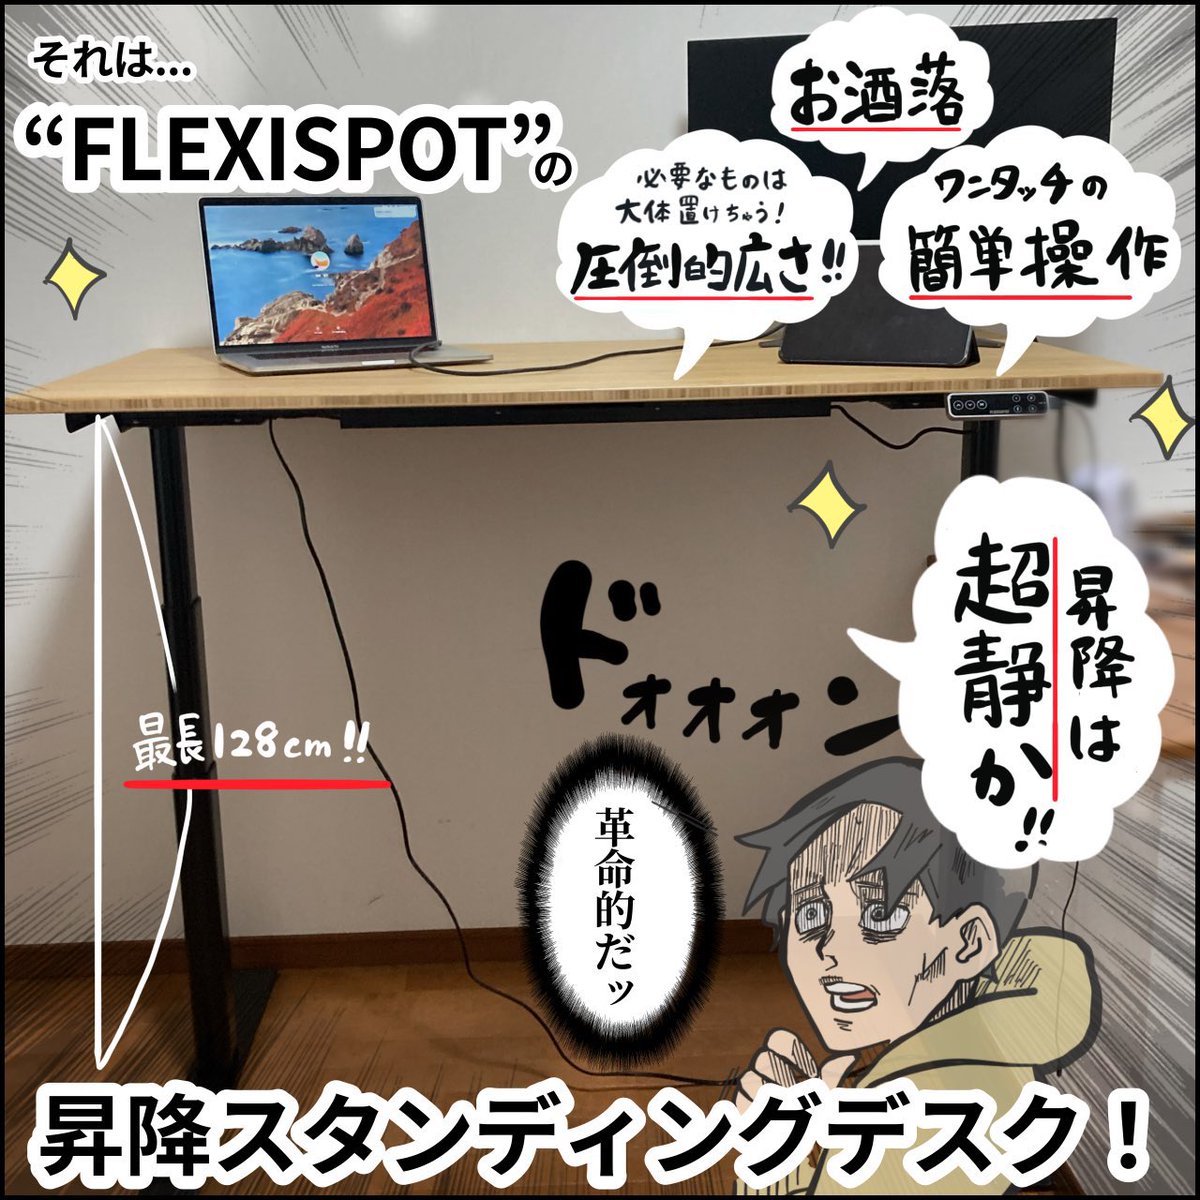 今日はPR漫画です!

「FLEXISPOT」の昇降デスクで
仕事のモチベーション、生活の質が爆上がりしました!

@FlexiSpot_JP  #PR
昇降デスクはこちらから!↓
https://t.co/eUjsCmGVBd 